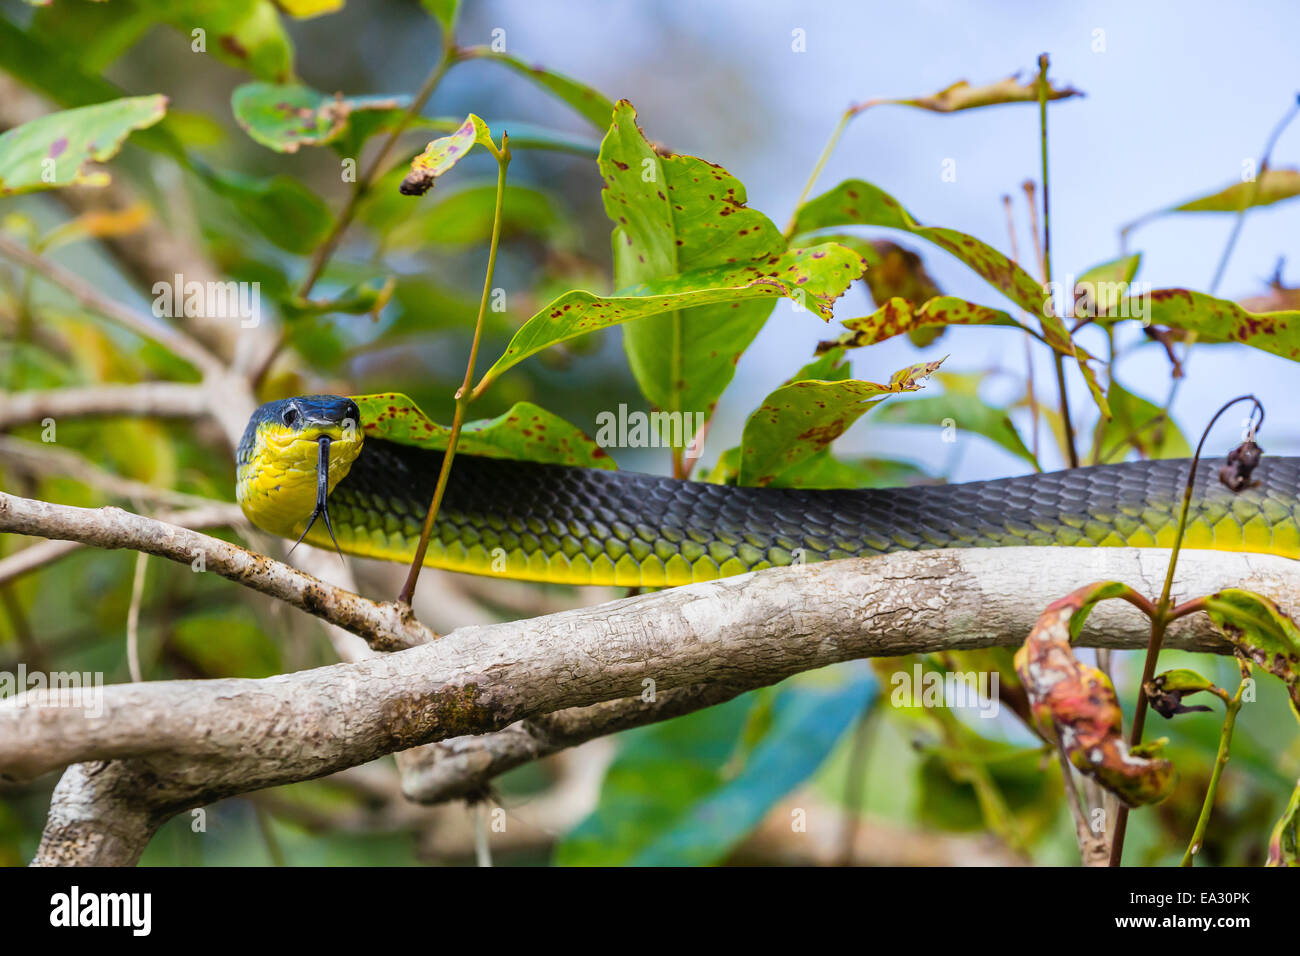 Un adulto árbol australiano a la serpiente, a orillas del río Daintree, selva tropical Daintree, Queensland, Australia Foto de stock